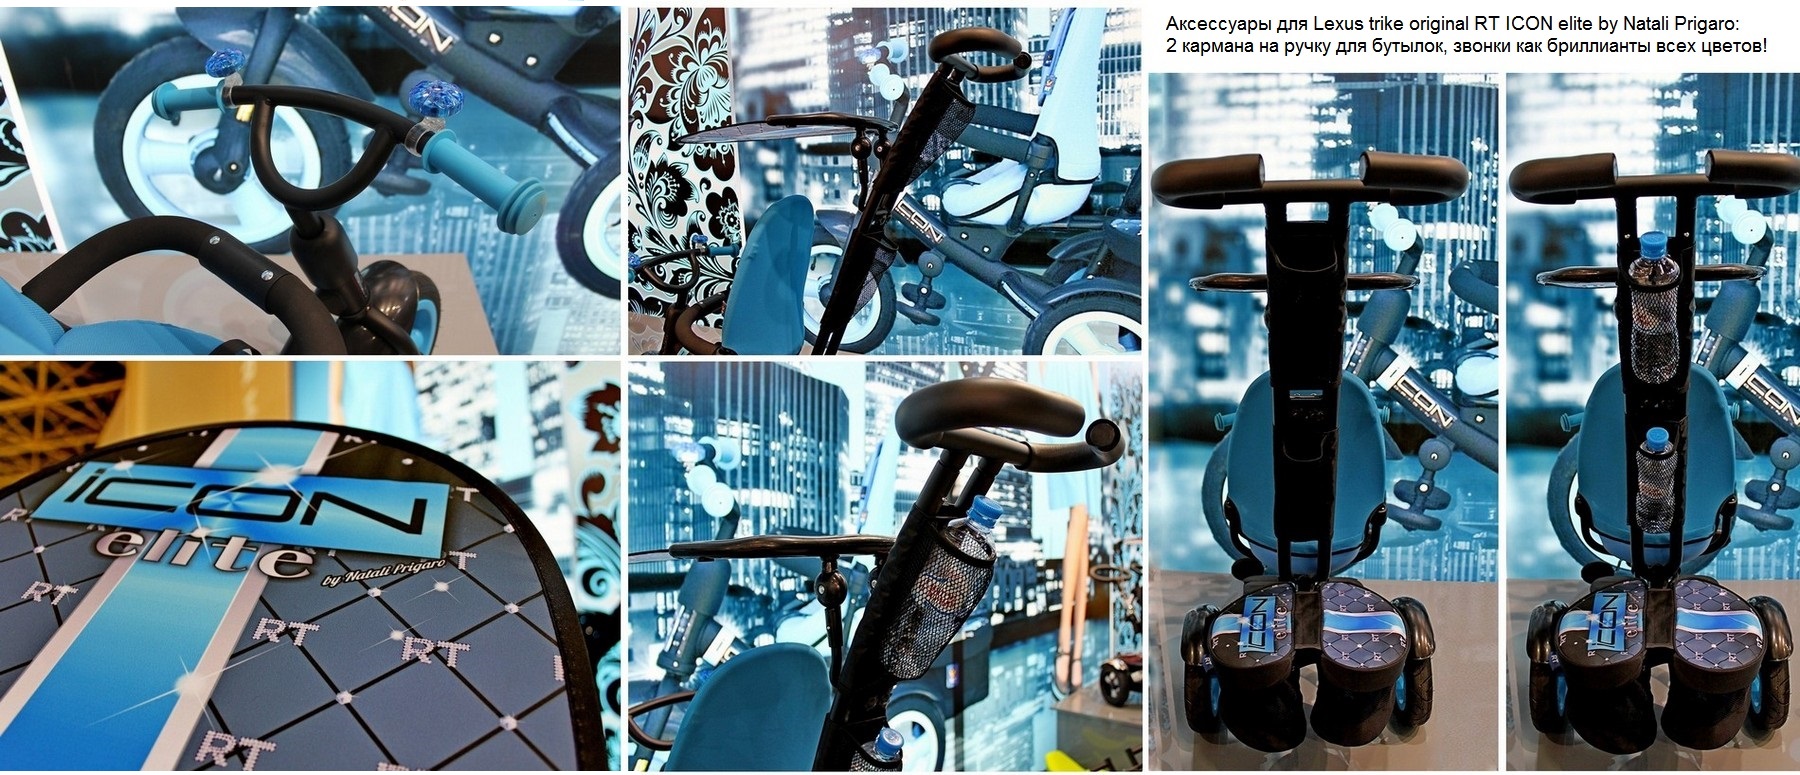 Велосипед Lexus trike original RT ICON elite by Natali Prigaro Crystal  